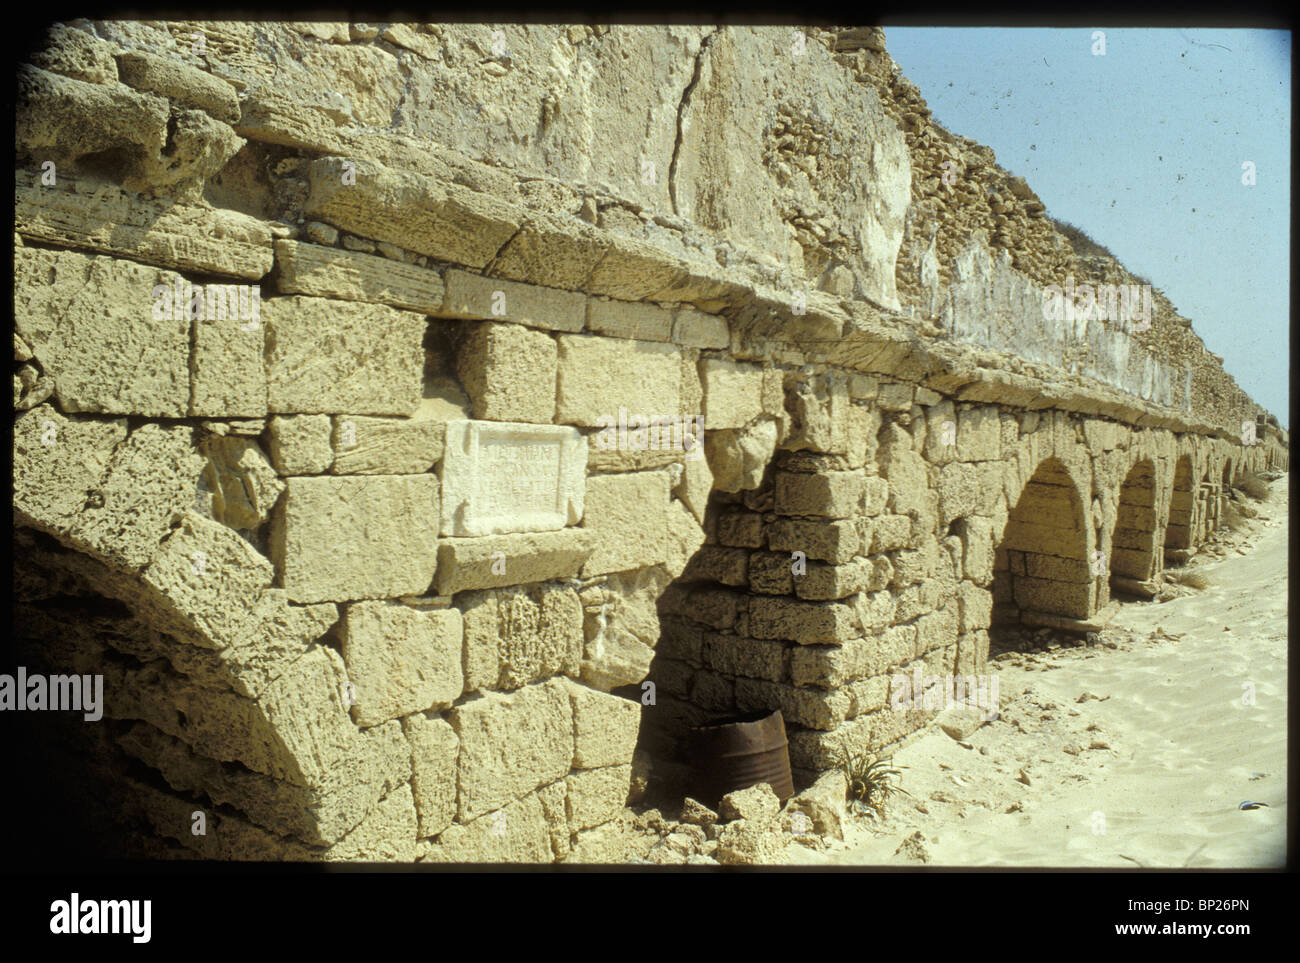 1239. Cesarea, l'Aquaduct costruita dai Romani che ha fornito la città portuale con acqua fresca proveniente dalle colline Foto Stock